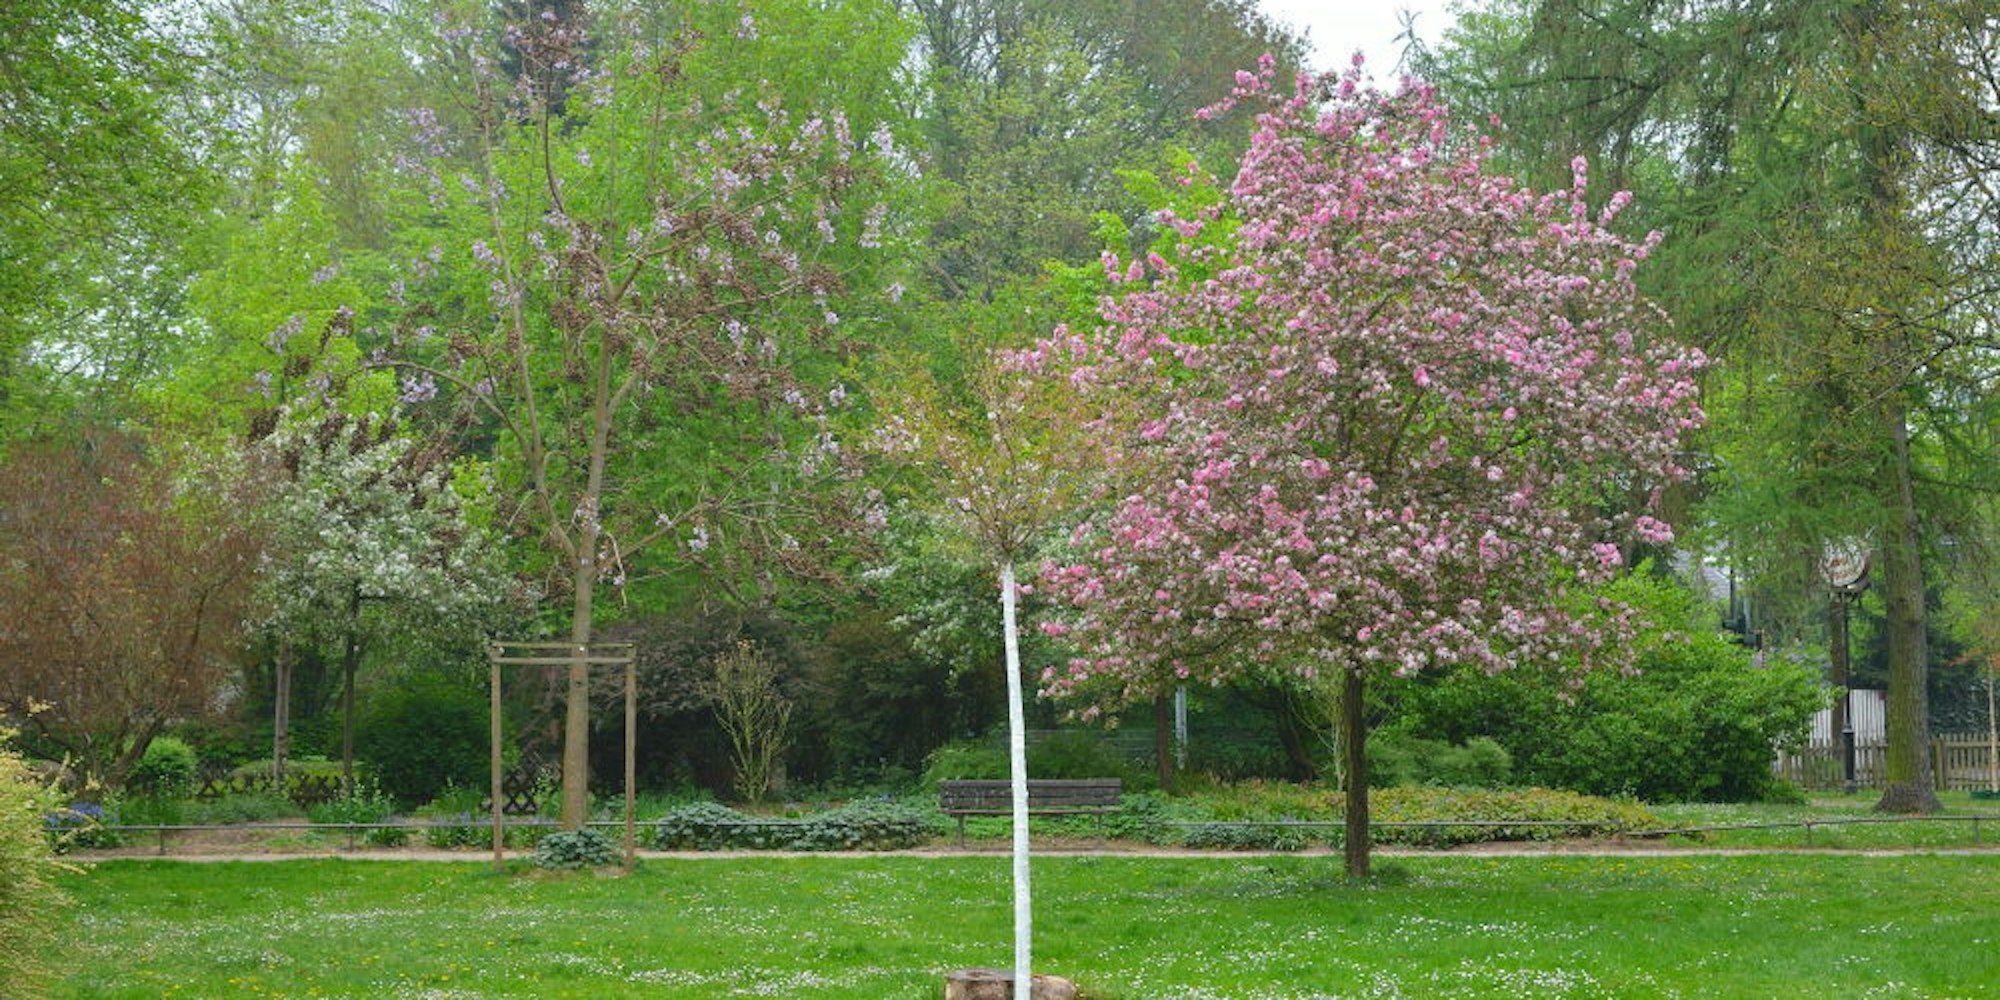 Zum Flanieren lädt der Park ein. Der Bauboom der letzten Jahre hat die grünen Oasen weniger werden lassen.